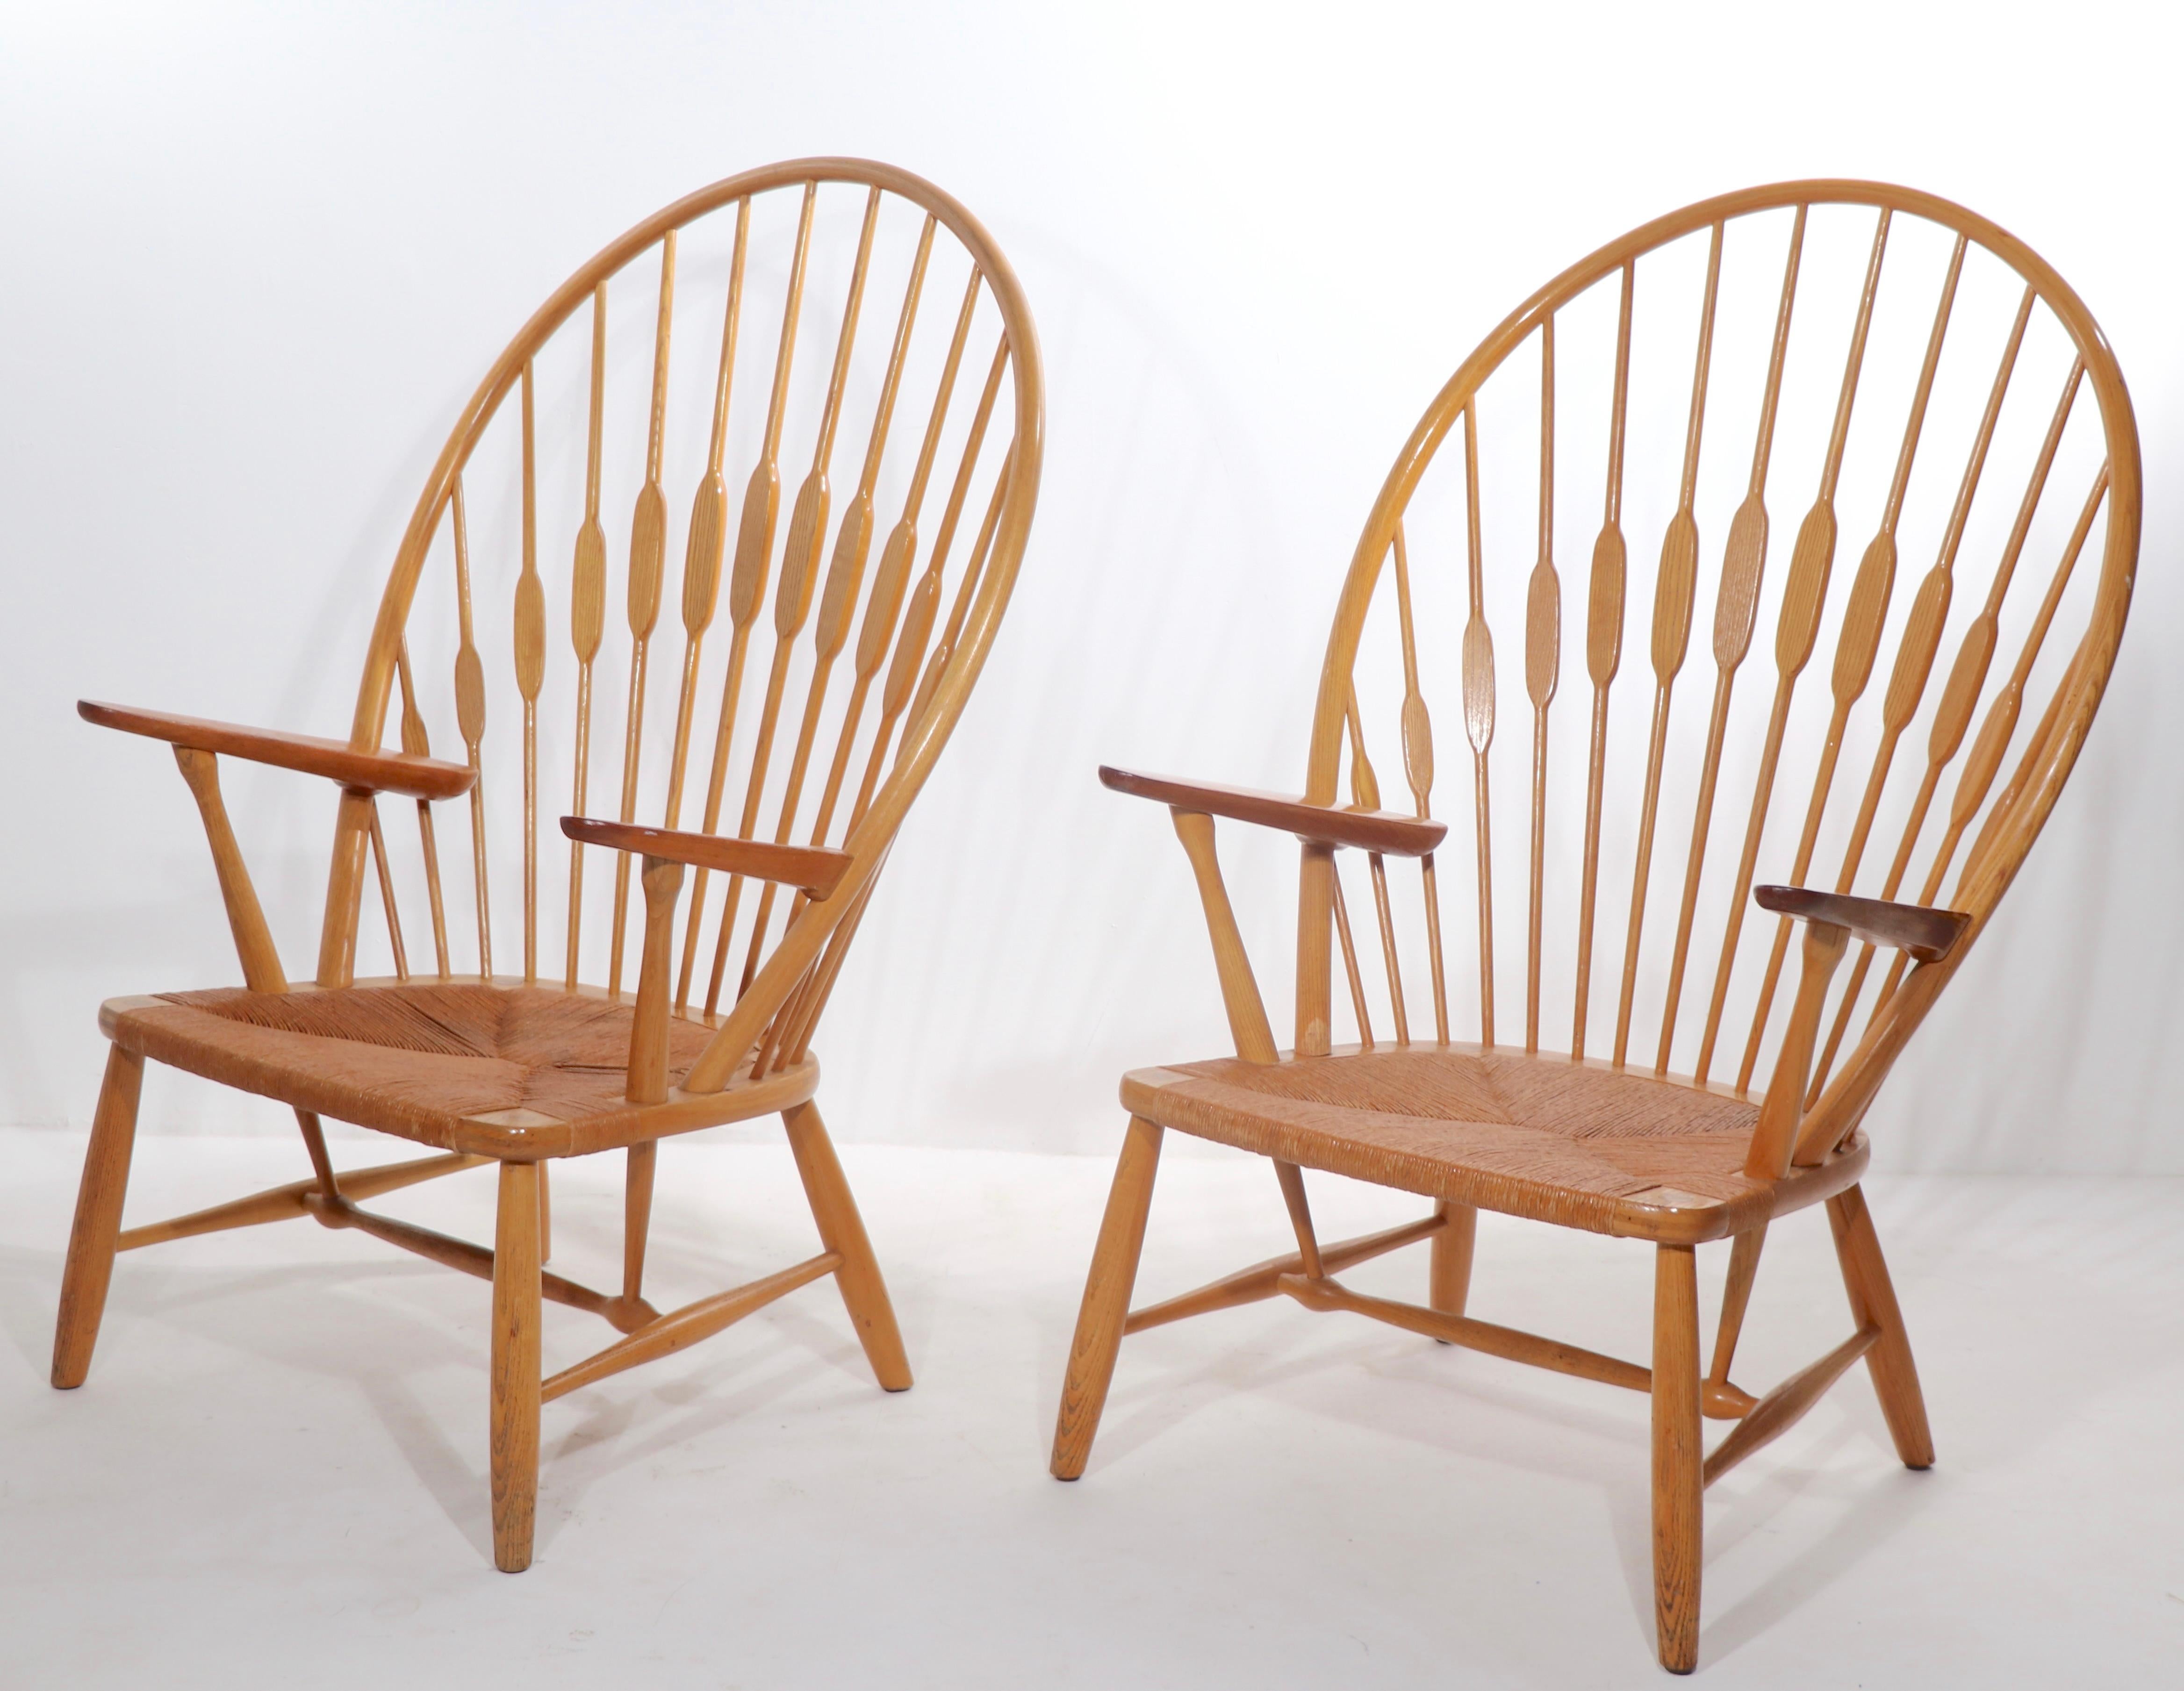 Ikonisches Paar dänischer moderner Meisterwerke, Peacock Chairs, entworfen von Has Wegner, hergestellt von Johannes Hansen, Kopenhagen, Dänemark, um 1960. Konstruiert aus Esche und Teakholz, mit originalen Pappsitzen. Beide Stühle sind in sauberem,